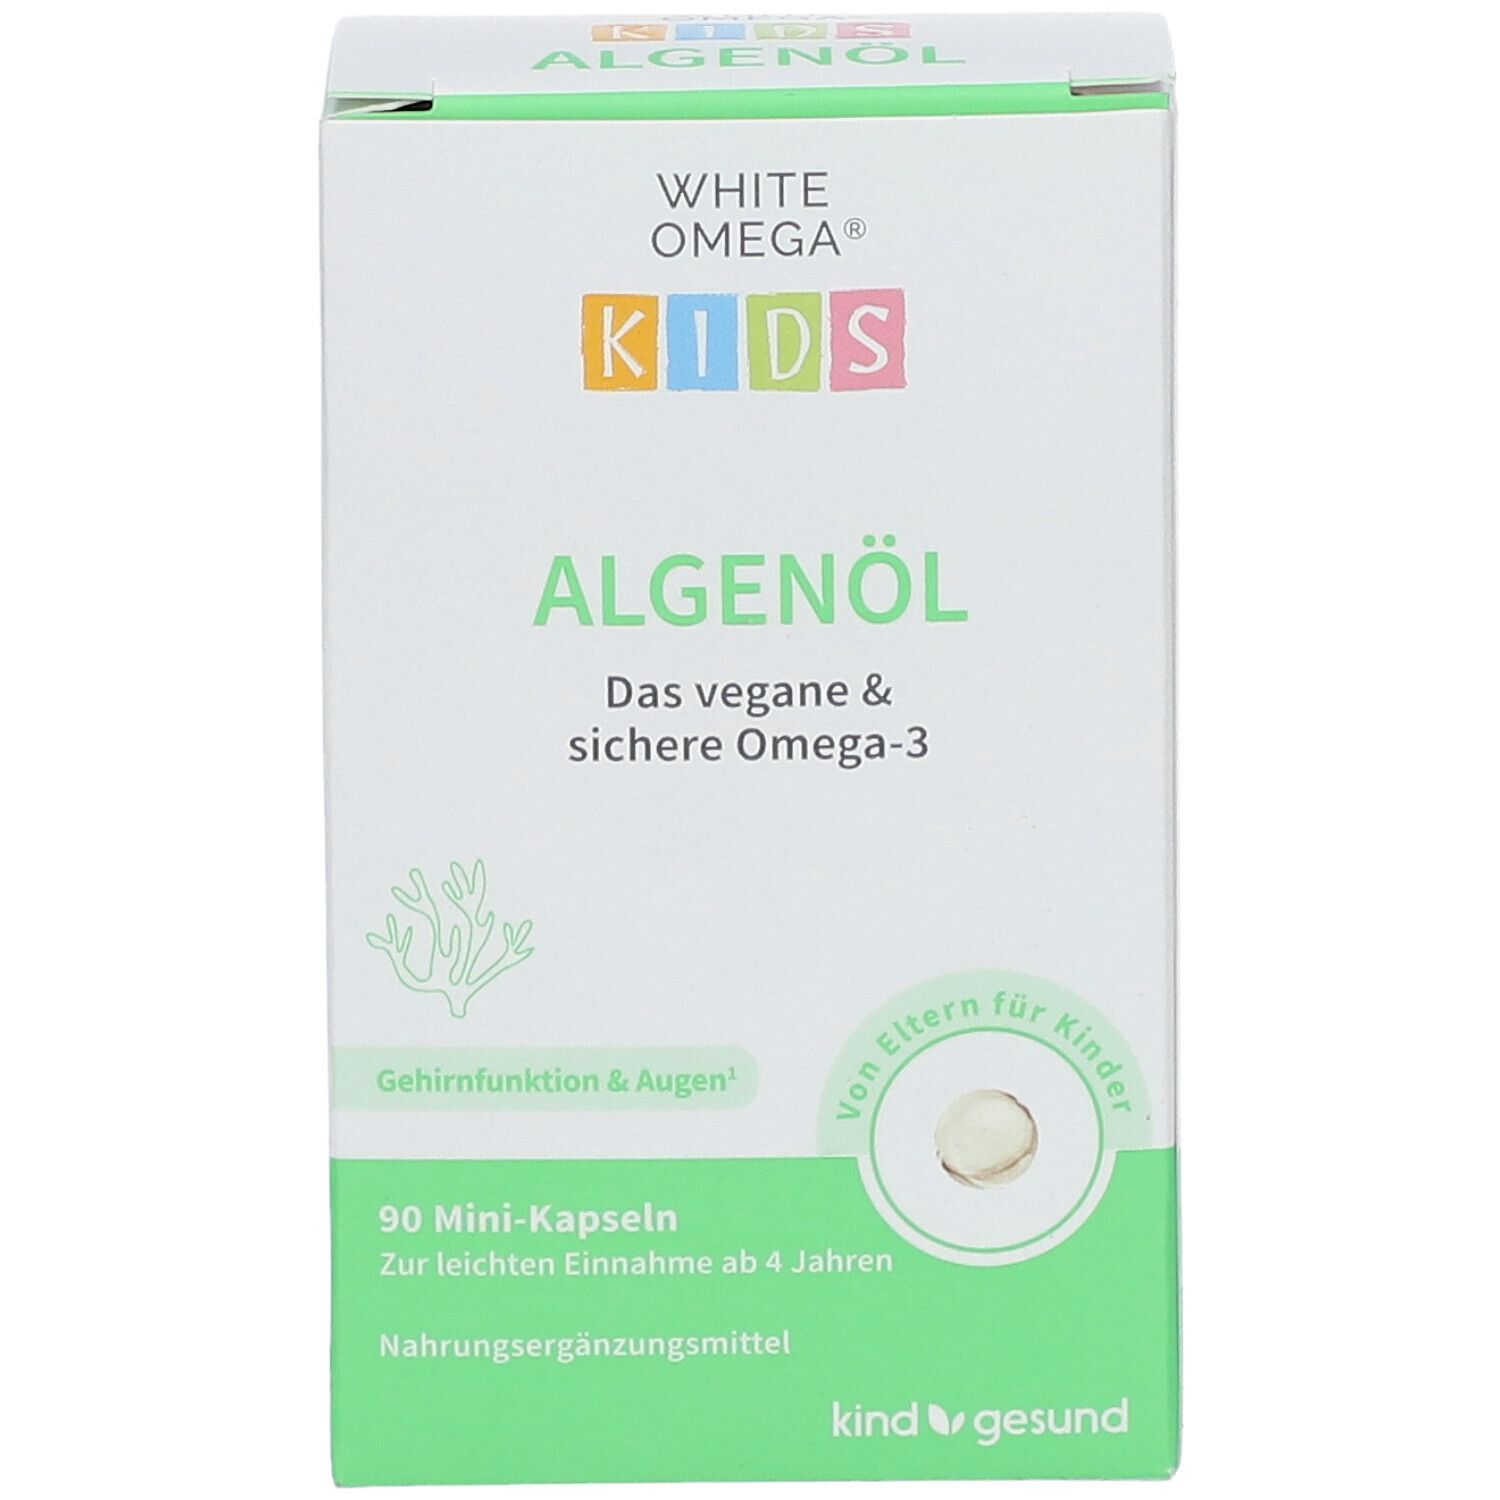 WHITE OMEGA® KIDS Algenöl